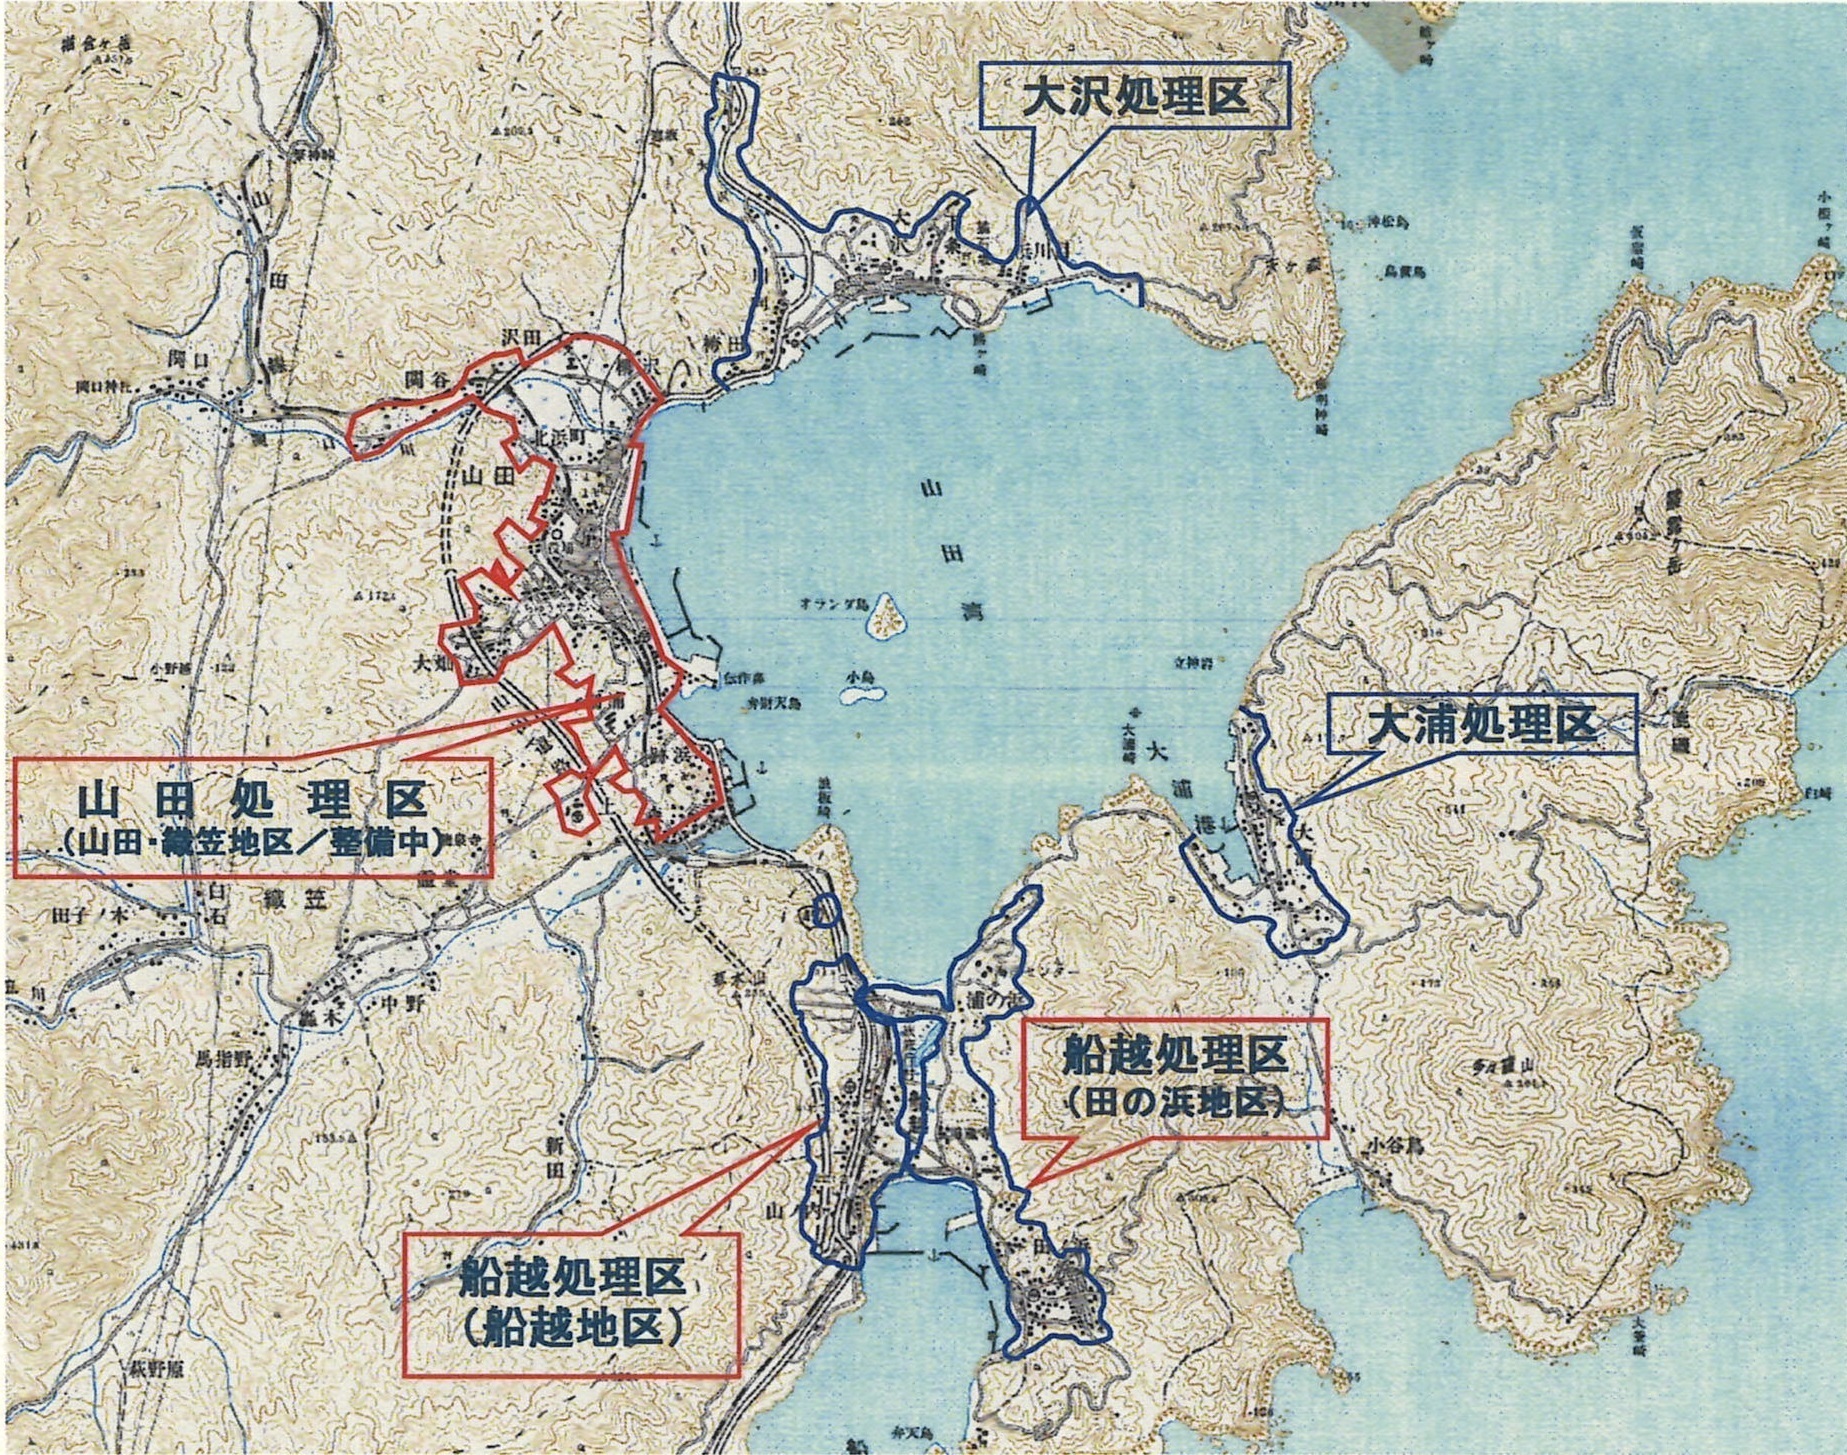 山田町で下水道を利用できる処理区の図です。なお、山田処理区は現在整備中です。